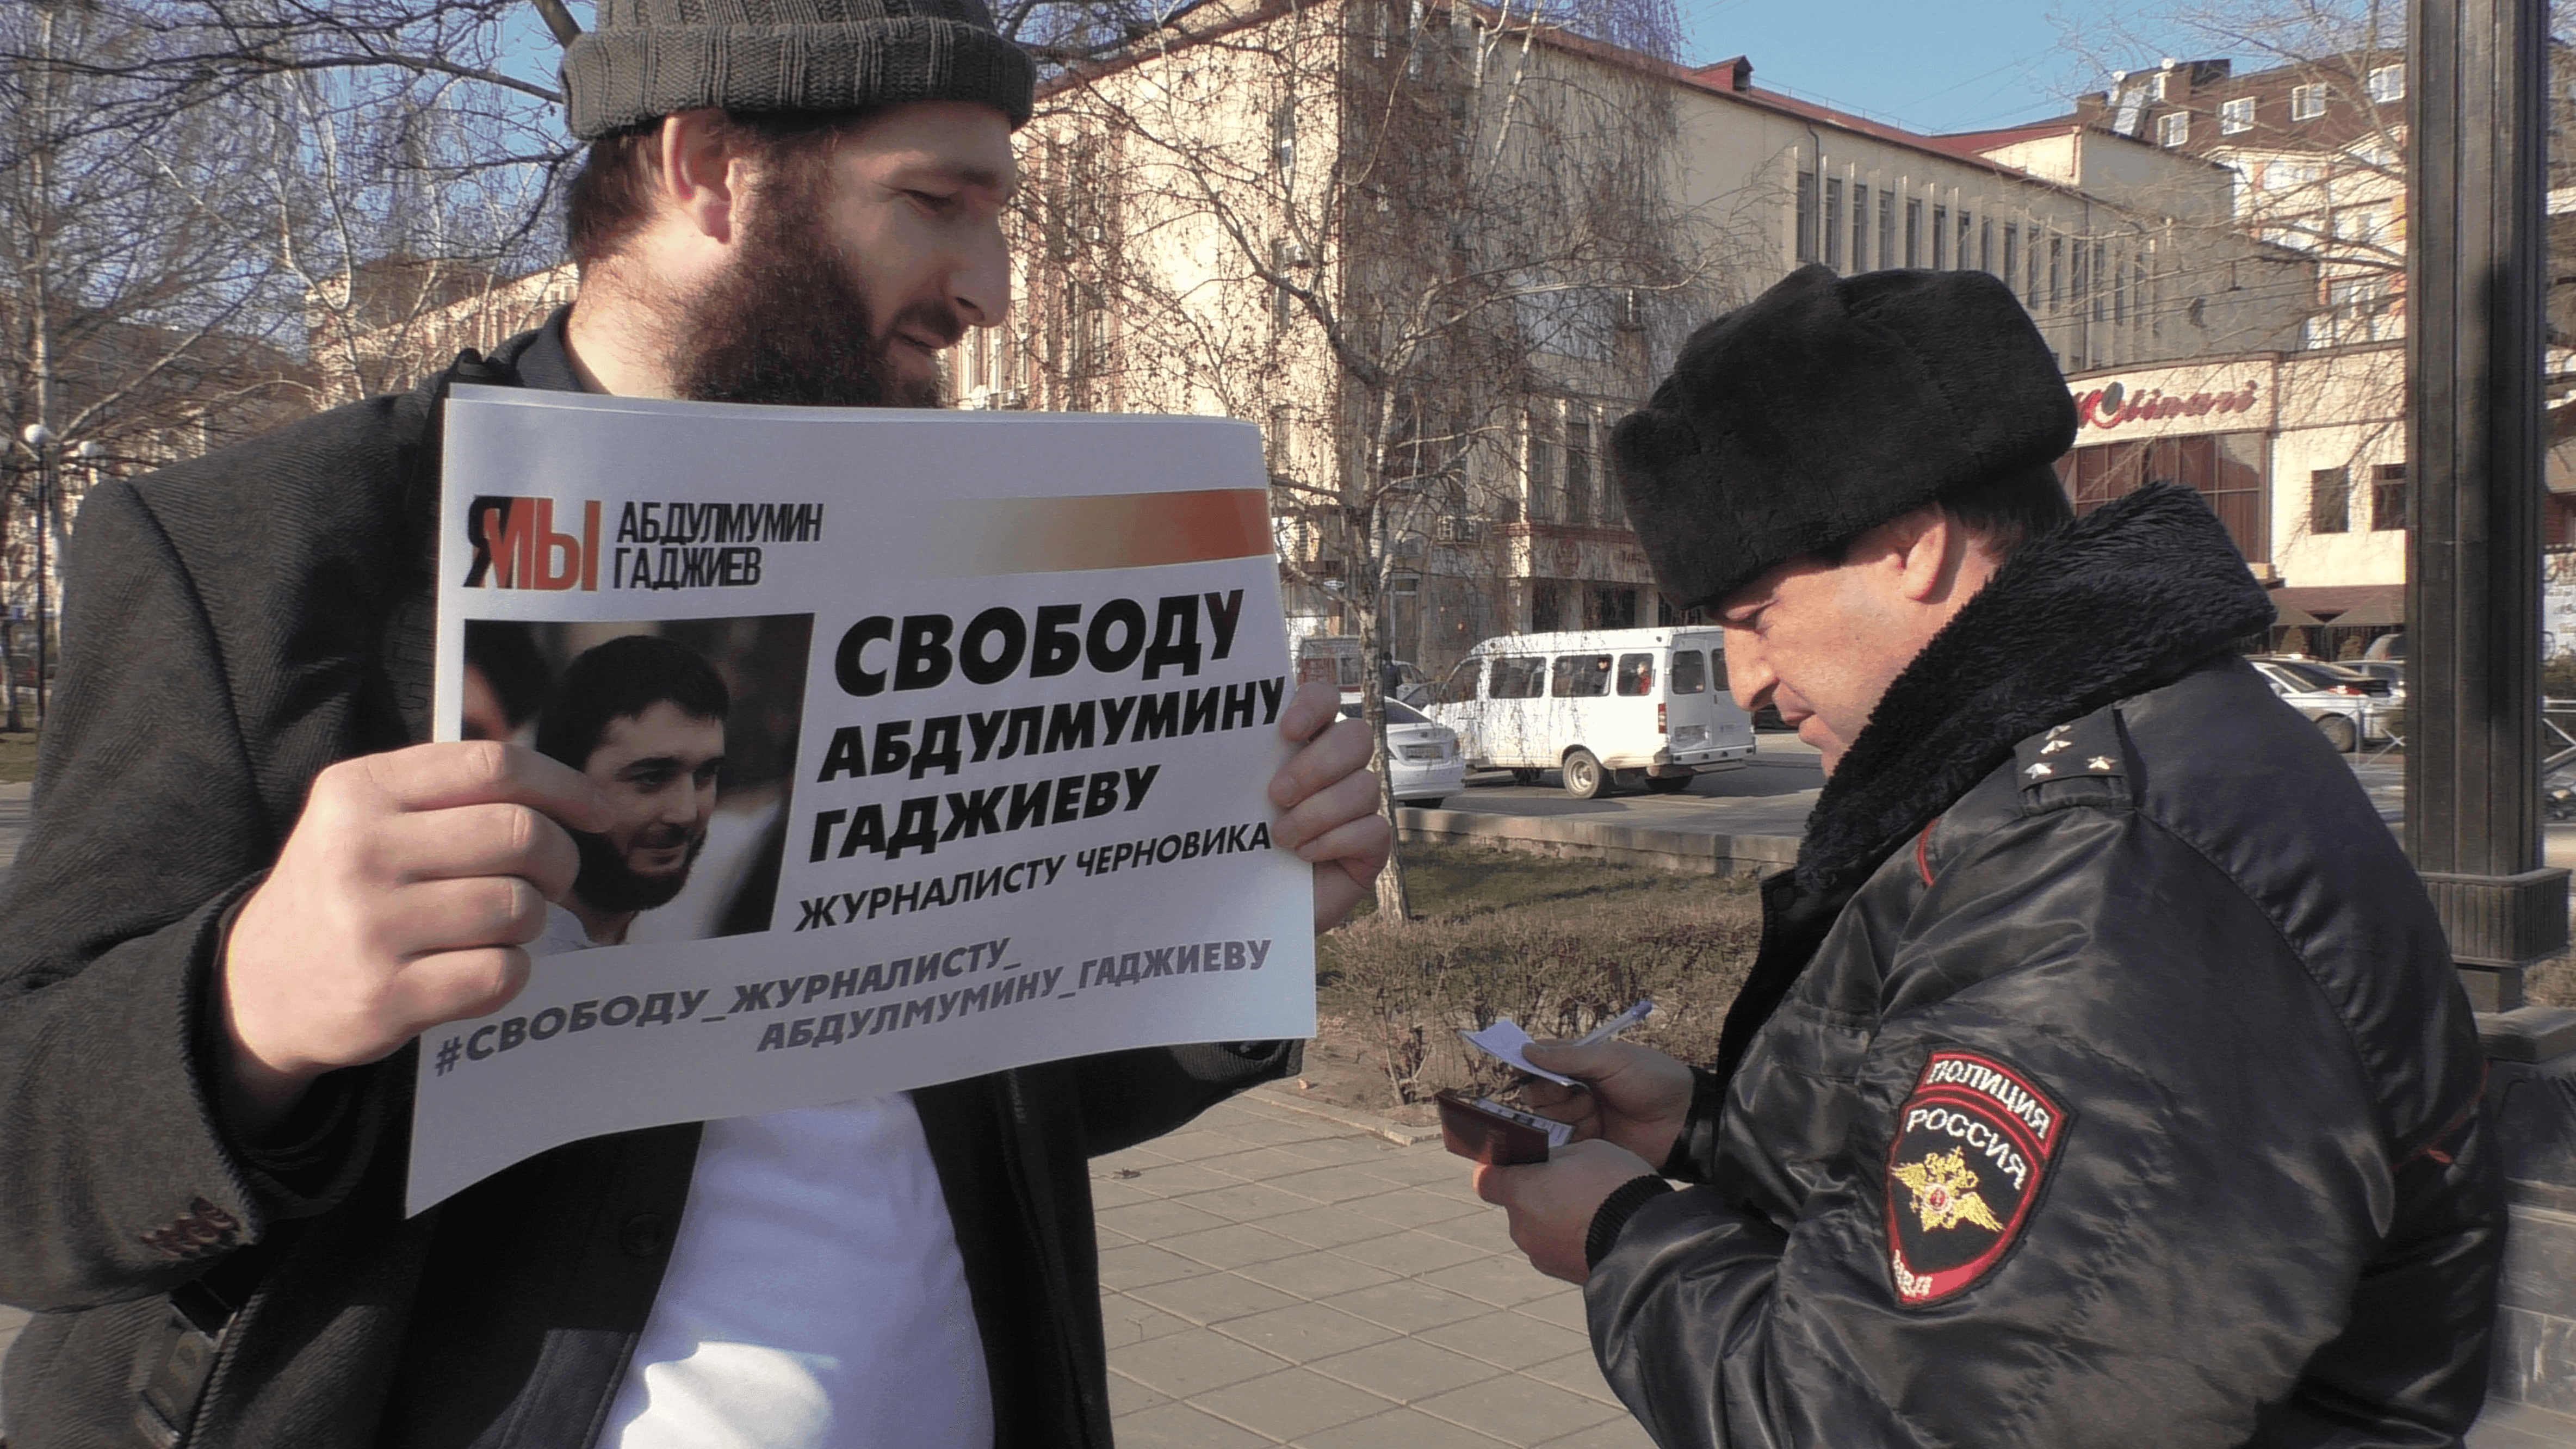 Верховный суд Дагестана начал рассматривать апелляционную жалобу журналиста Идриса Юсупова